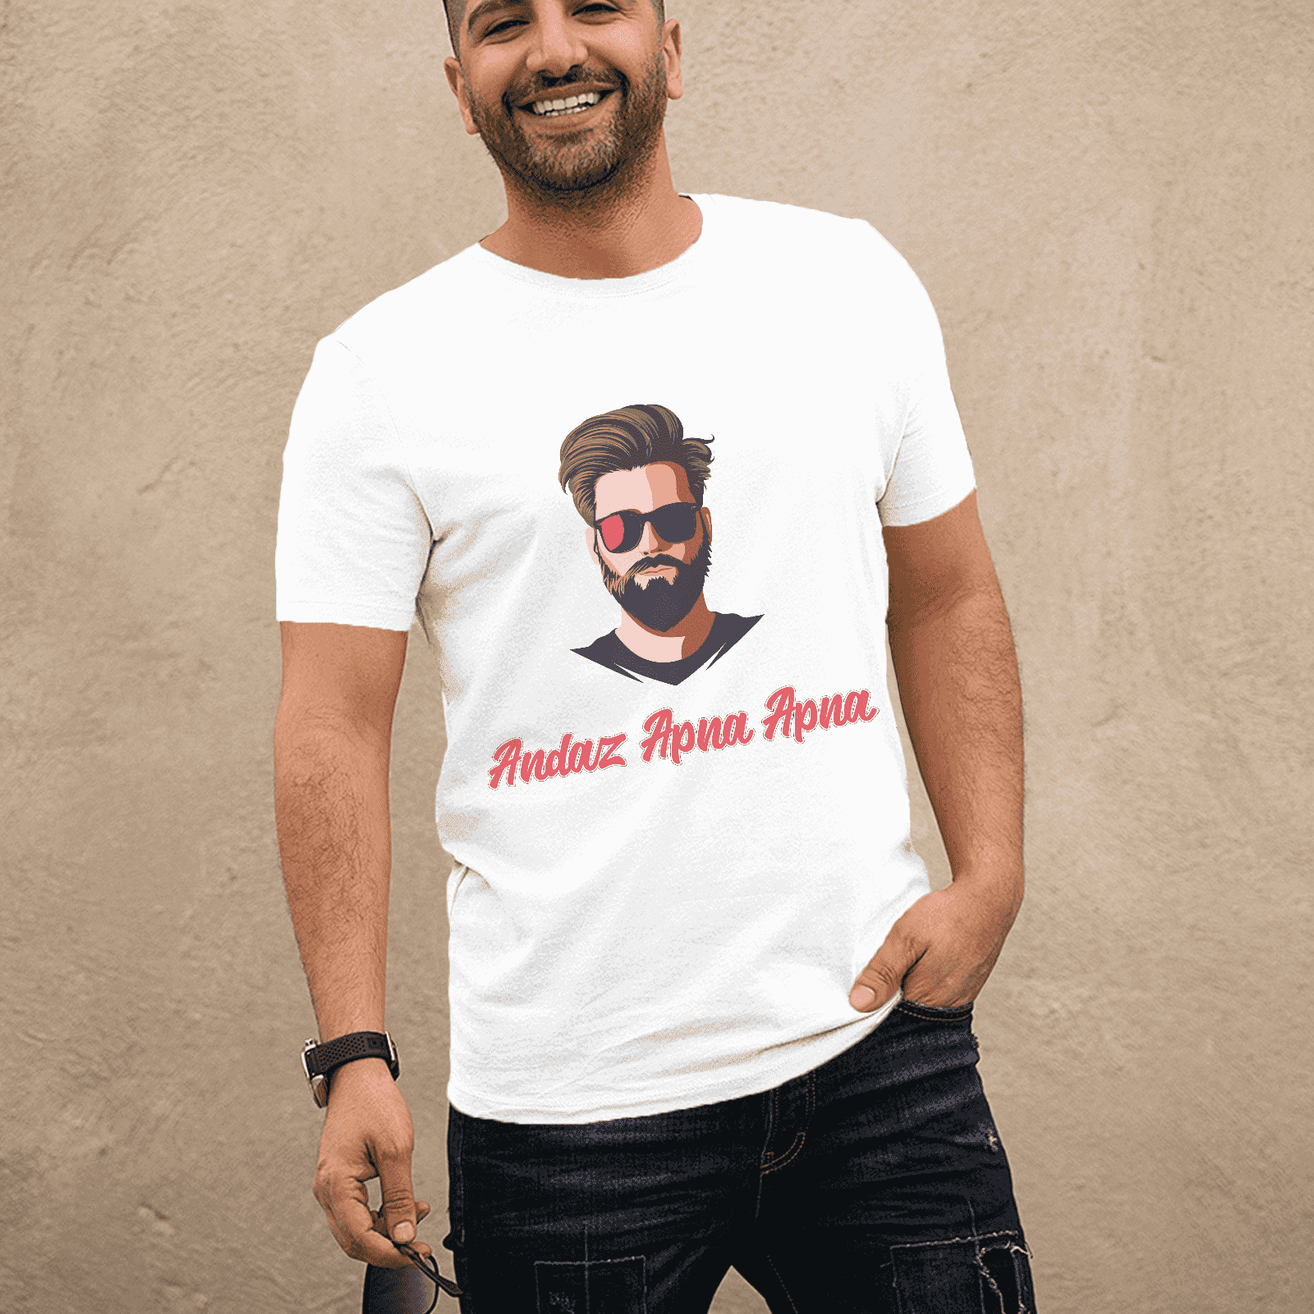 Andazz Apna Apna (Our own style!) Men's Graphic T-Shirt